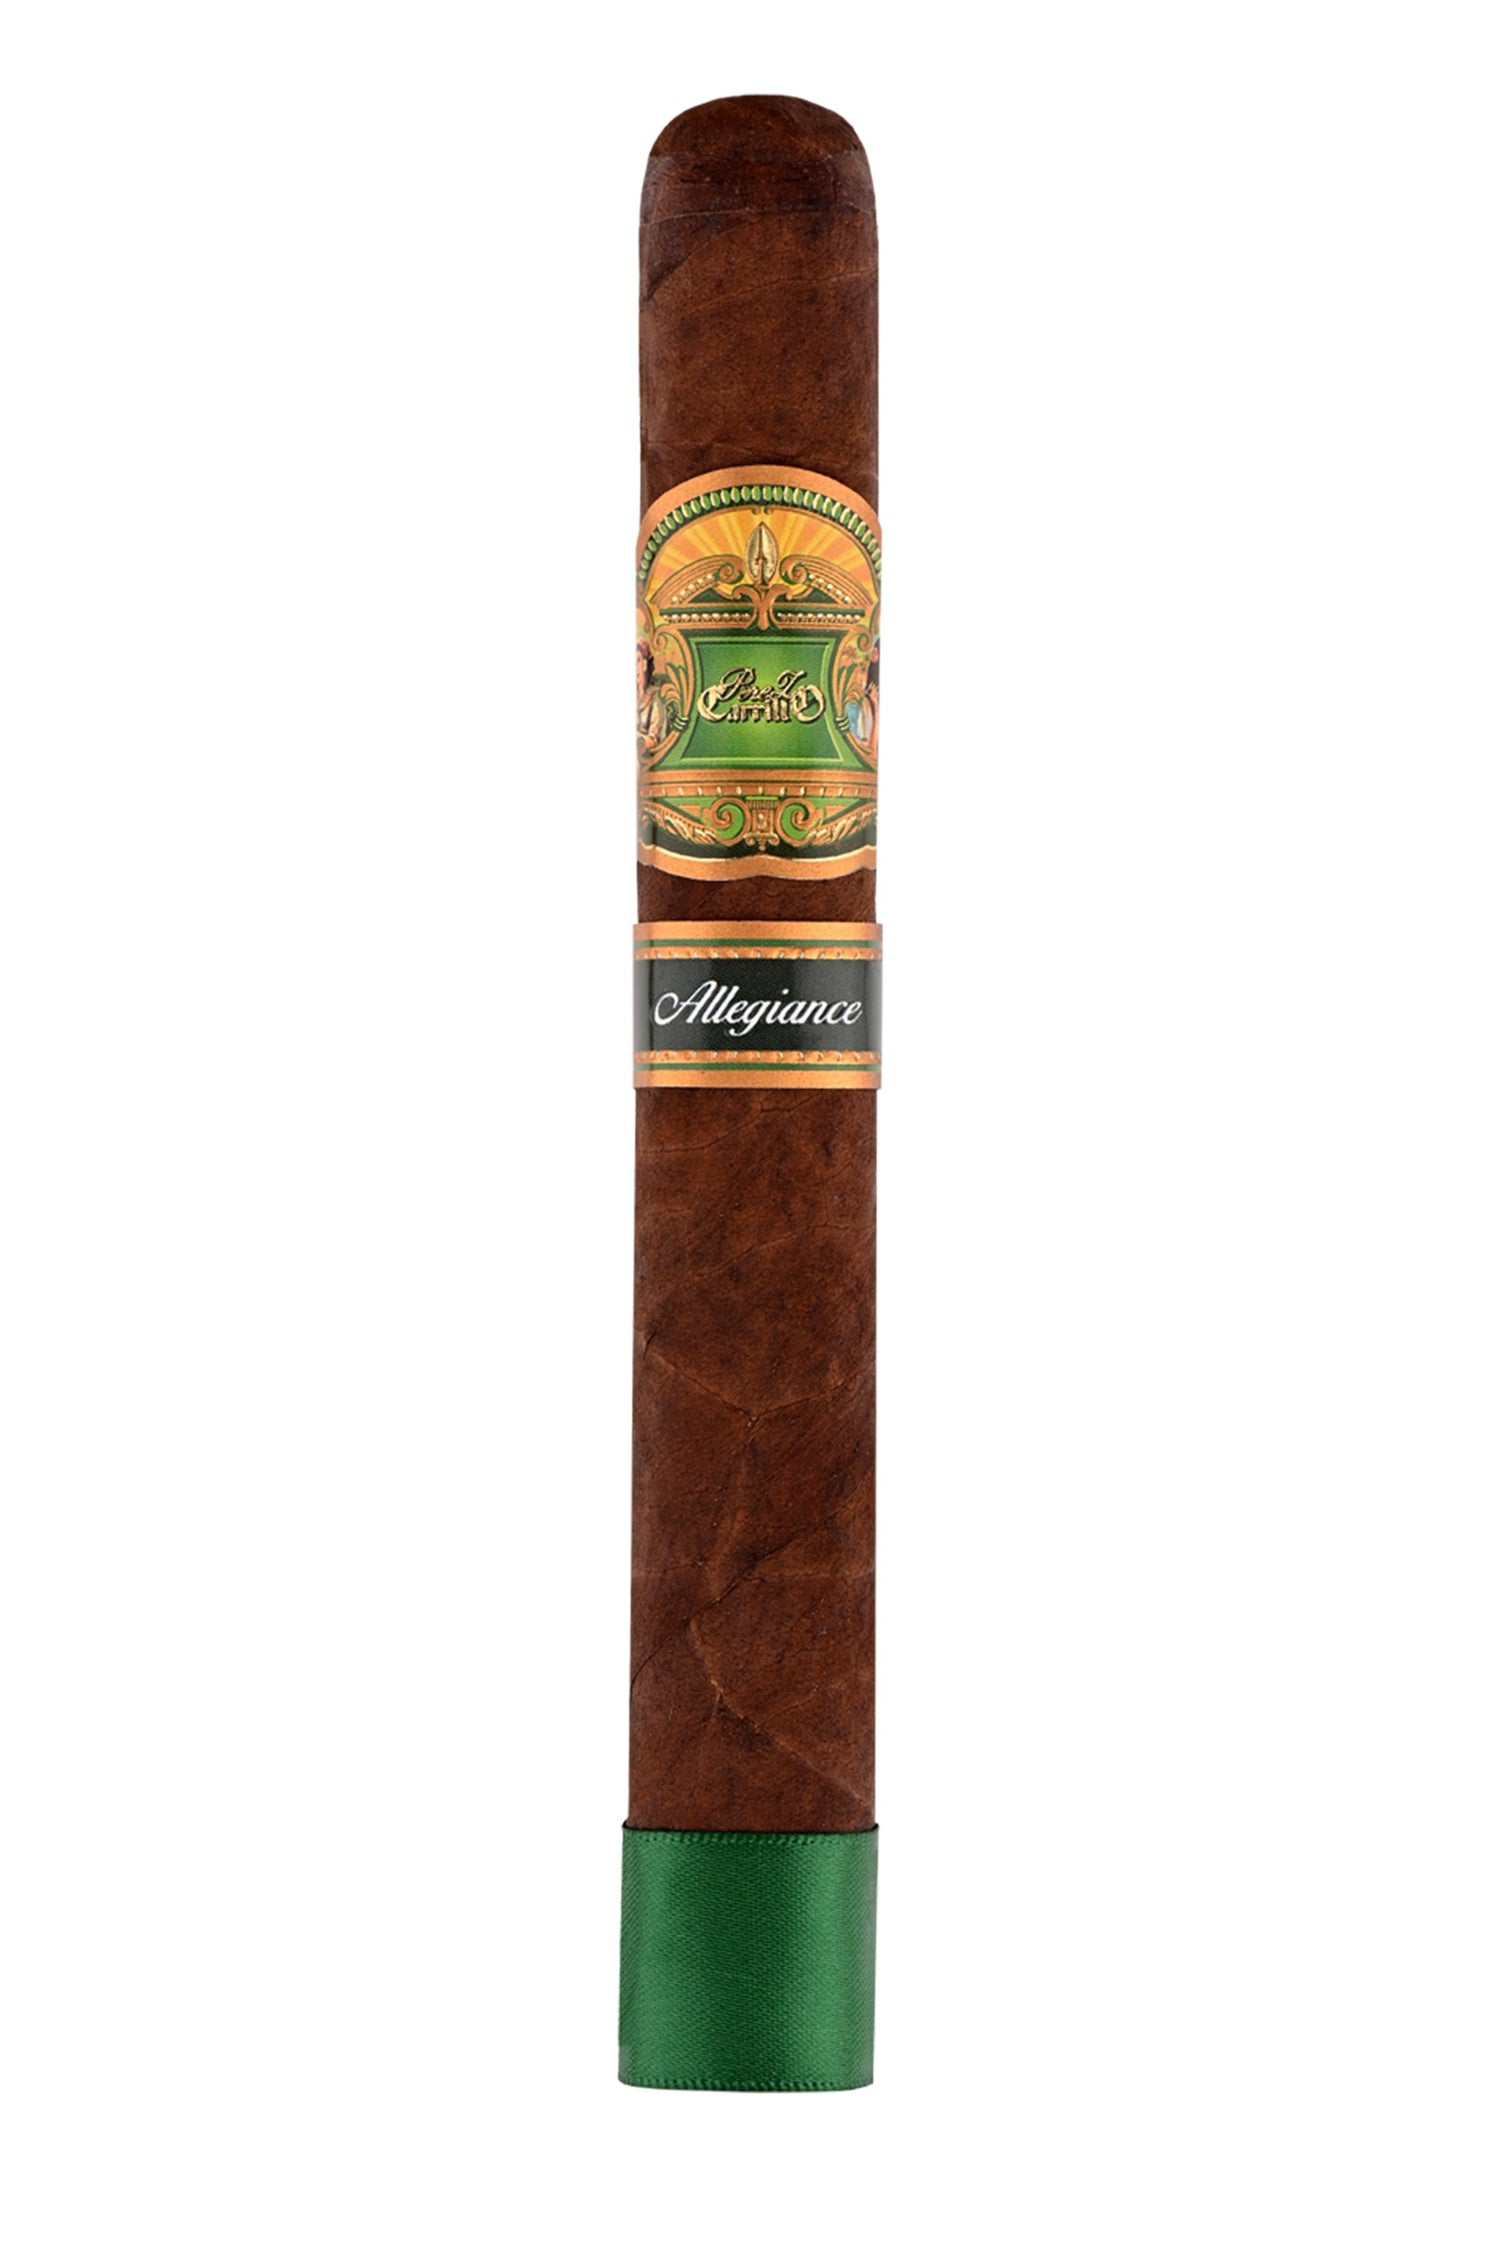 E.P. Carrillo Allegiance Wingman Cigars